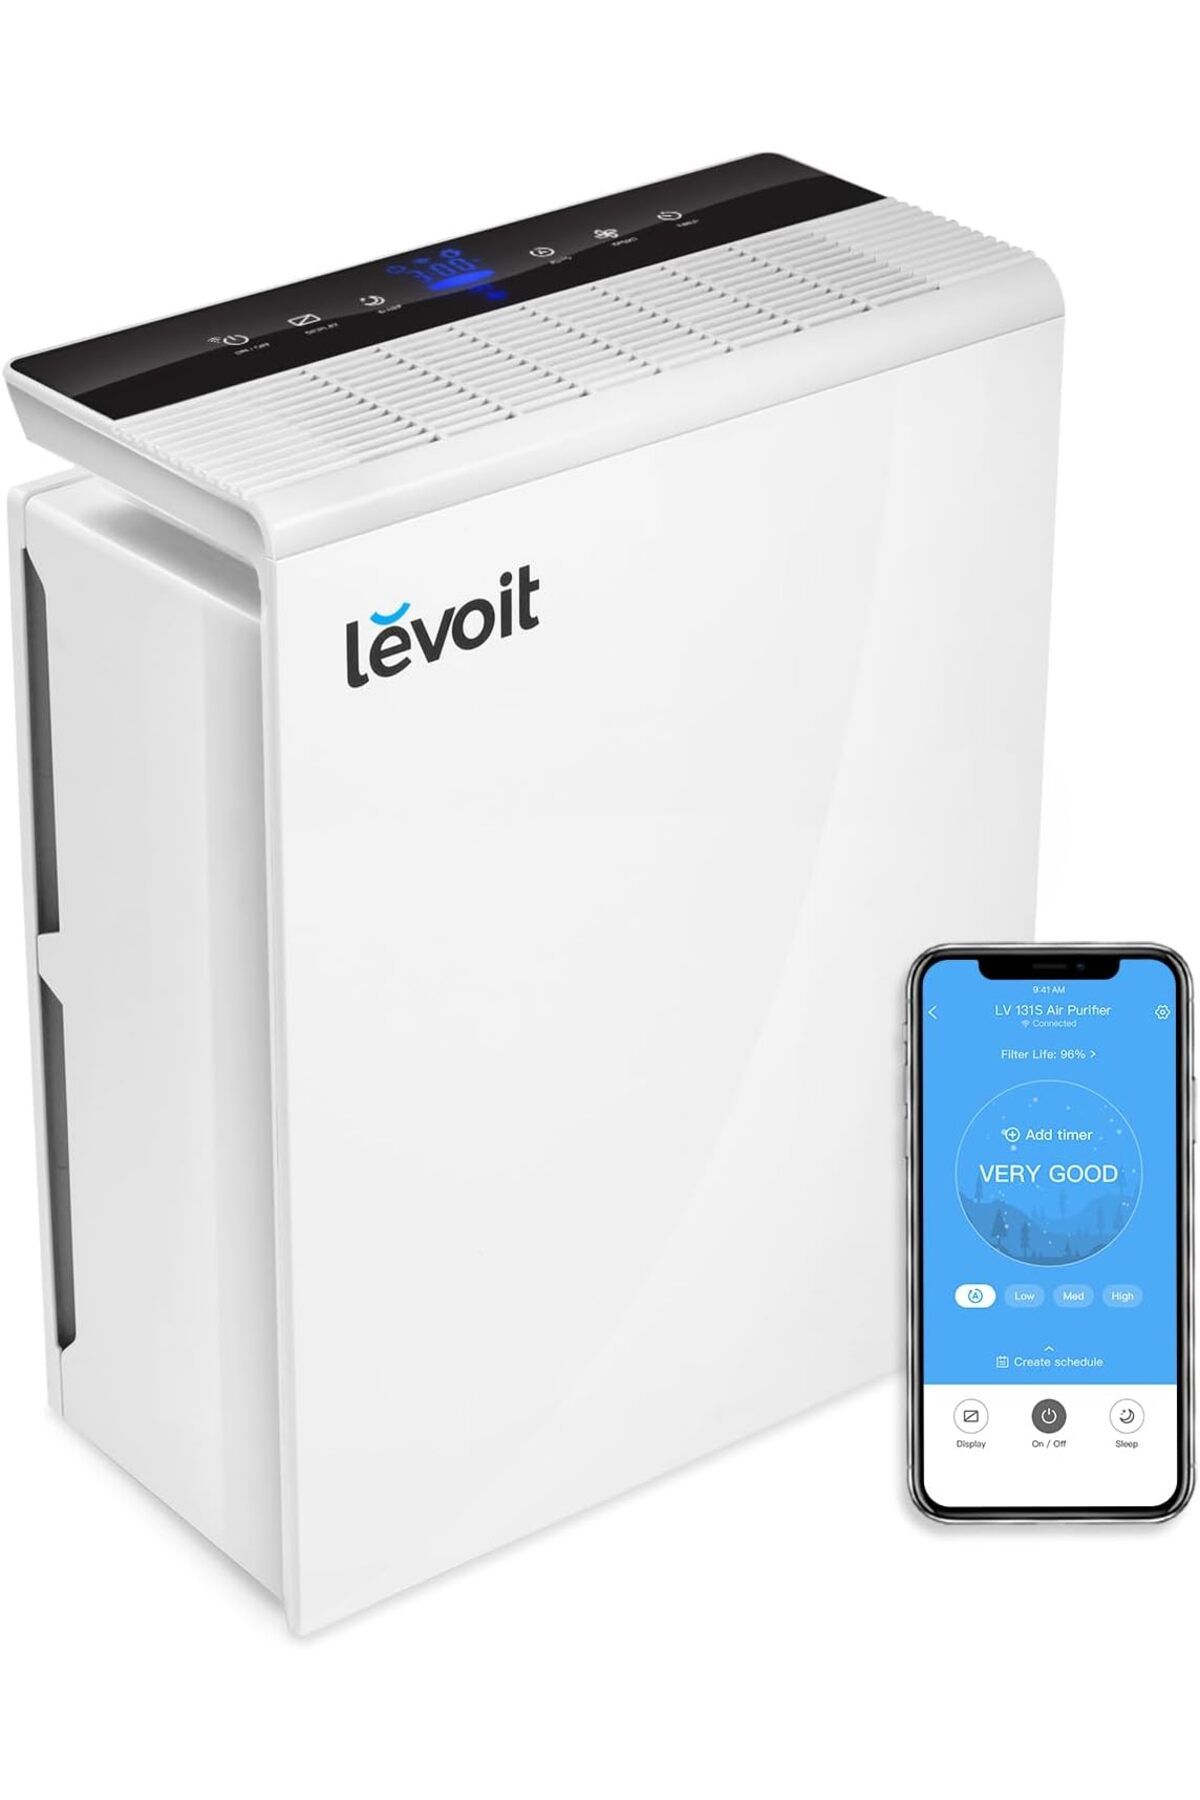 Levoit Home WiFi Hepa Hava Temizleme Cihazı, Hava Kalitesi Göstergesi